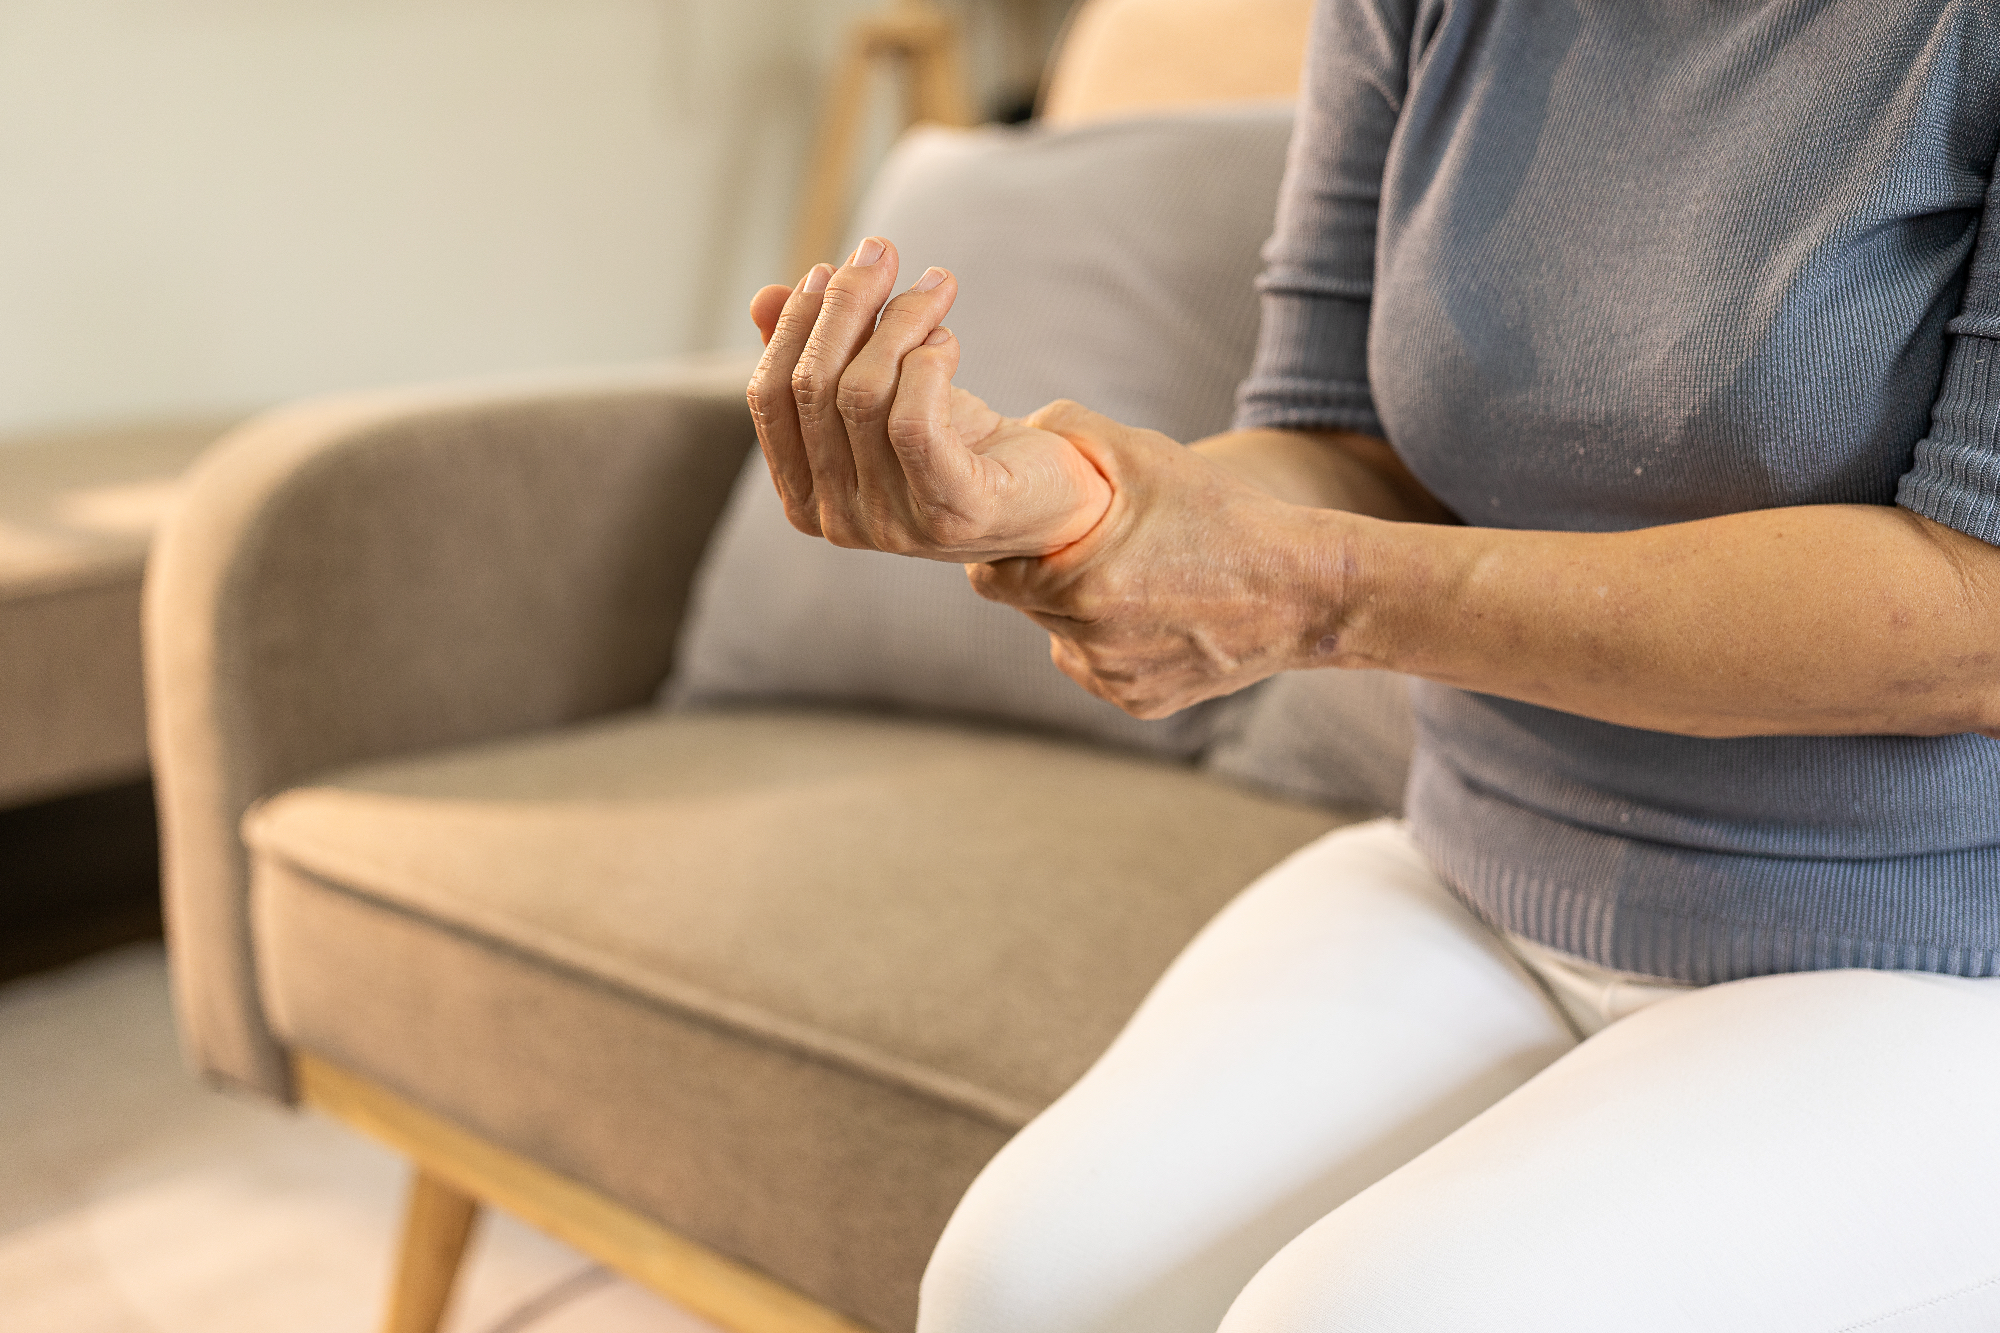 Revmatoidni artritis nam definitivno lahko veliko pove